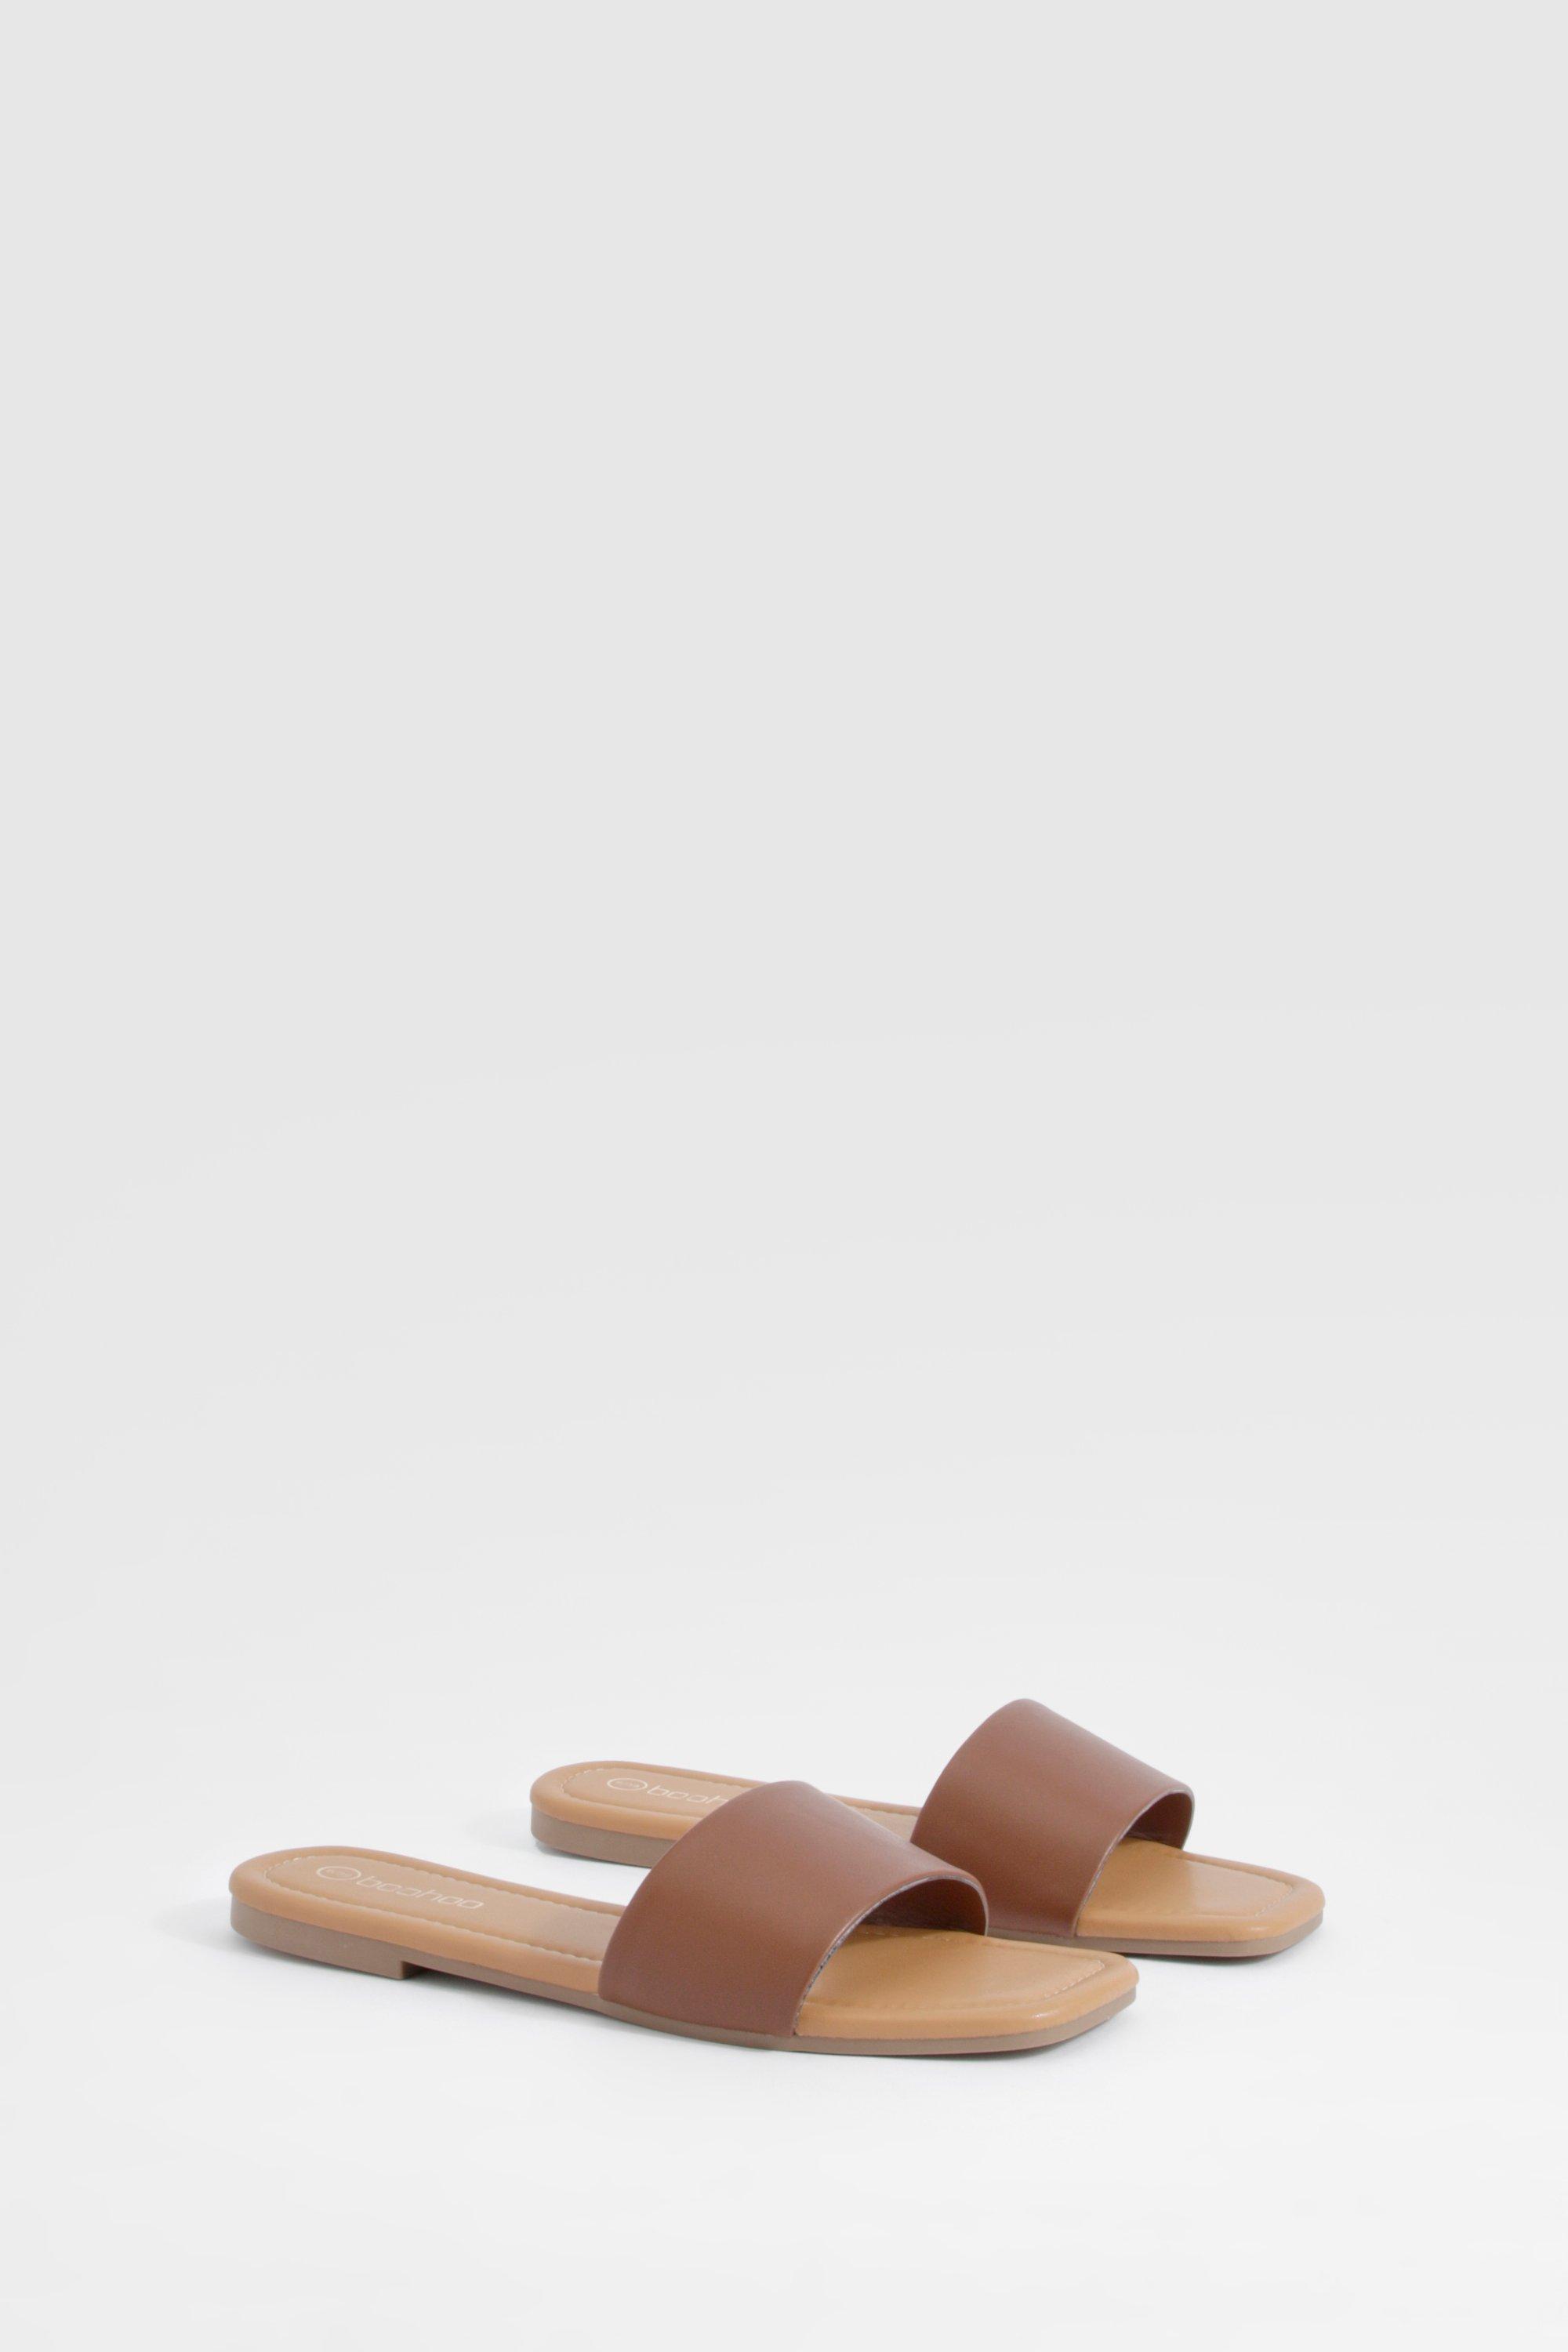 Image of Minimal Mule Sandals, Brown